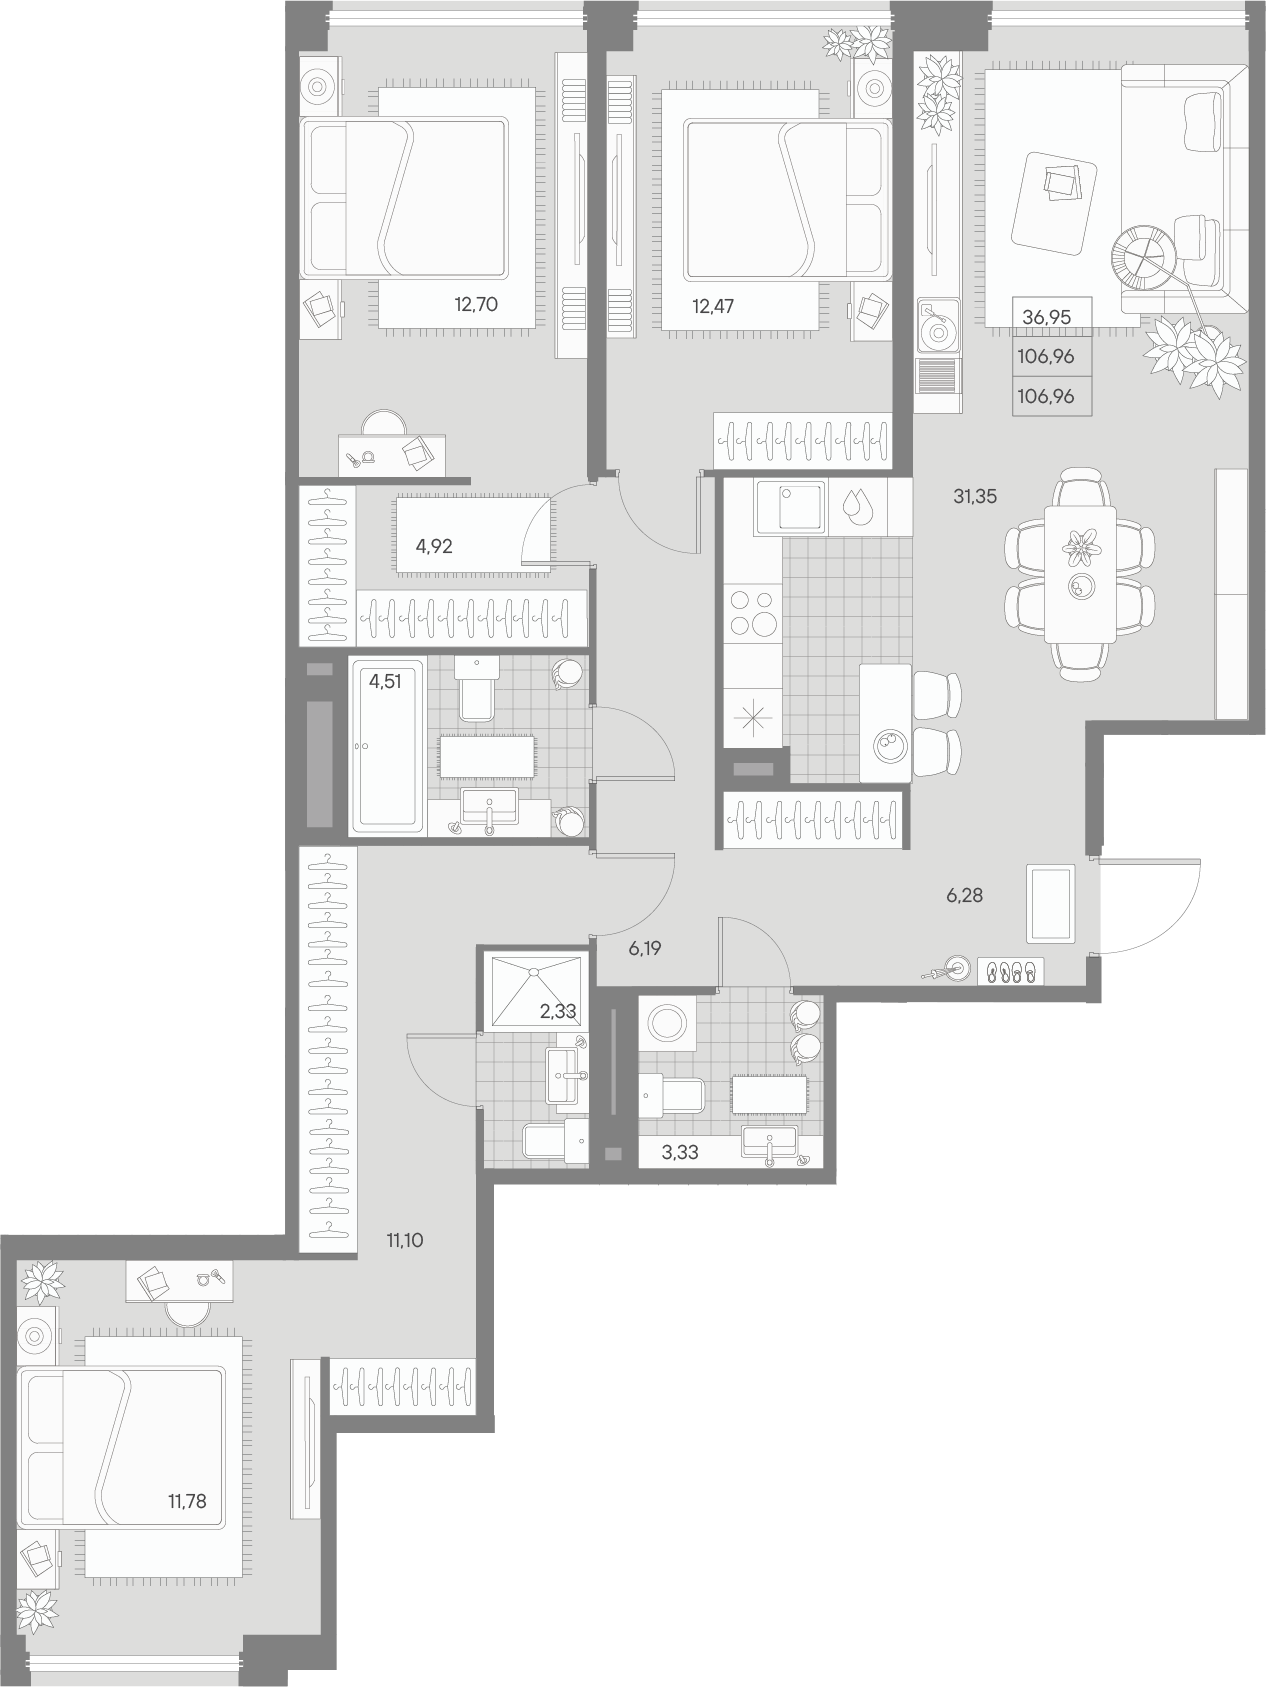 3-комнатная квартира  №201 в Avant: 106.96 м², этаж 7 - купить в Санкт-Петербурге